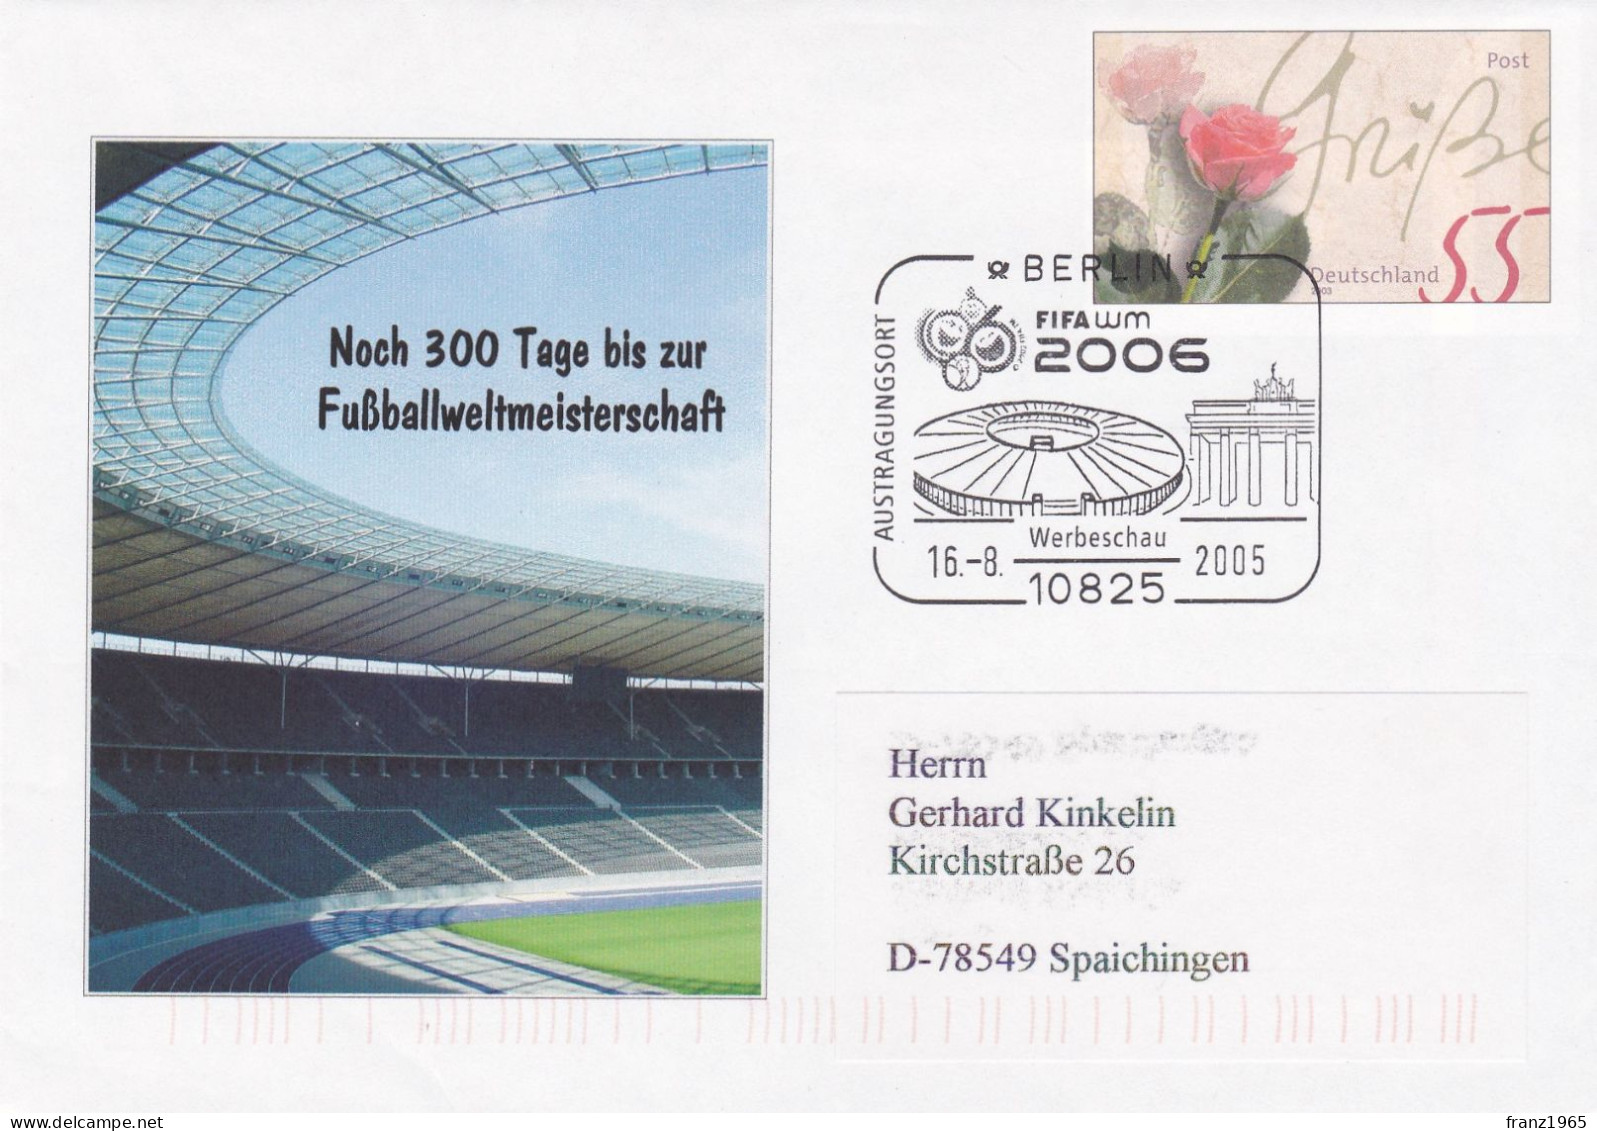 FIFA-WM 2006 - Berlin,16.8.2005 - 2006 – Deutschland